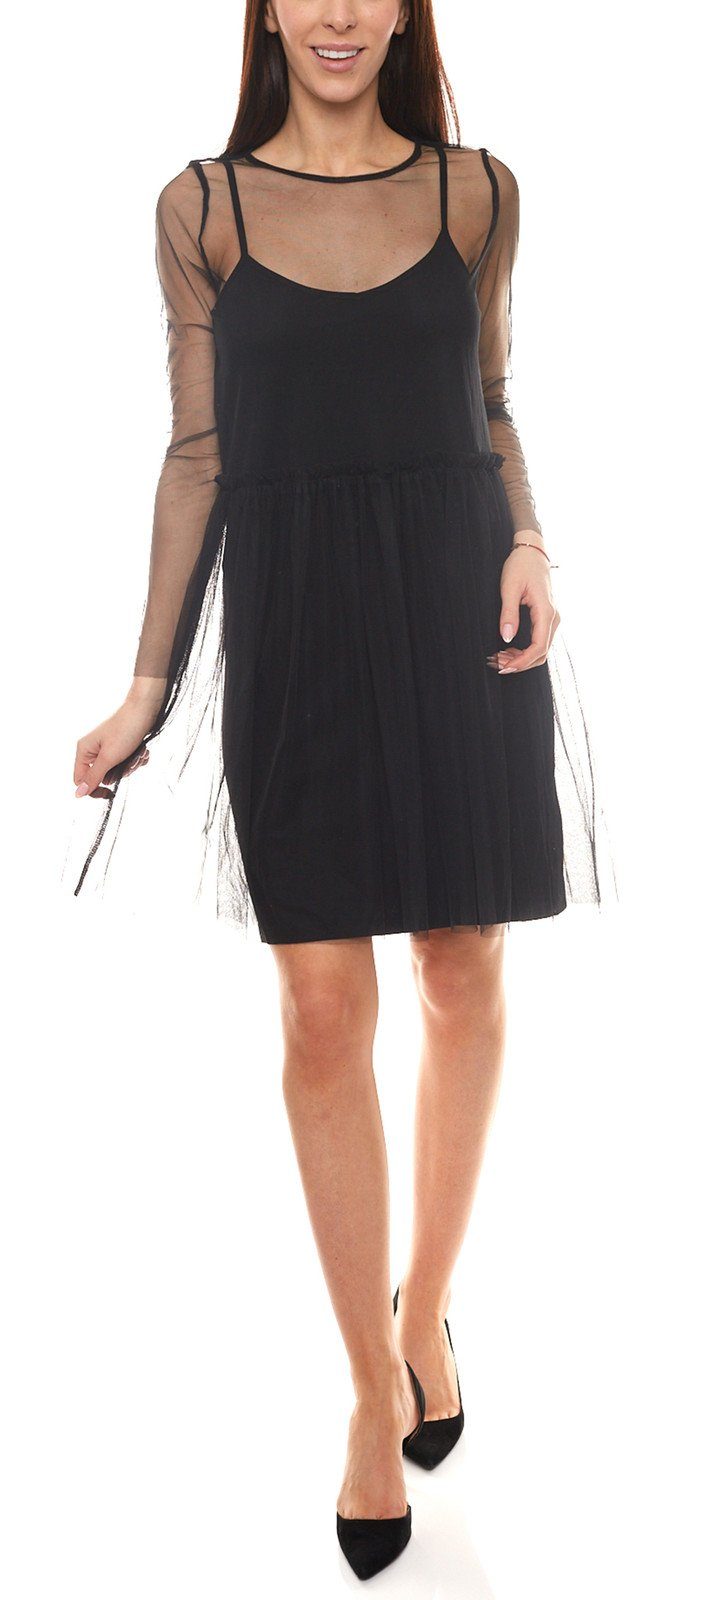 minimum Minikleid Mini-Kleid Kleid Freizeit-Kleid Schwarz Lagen-Look teilweise minimum im transparentes Damen